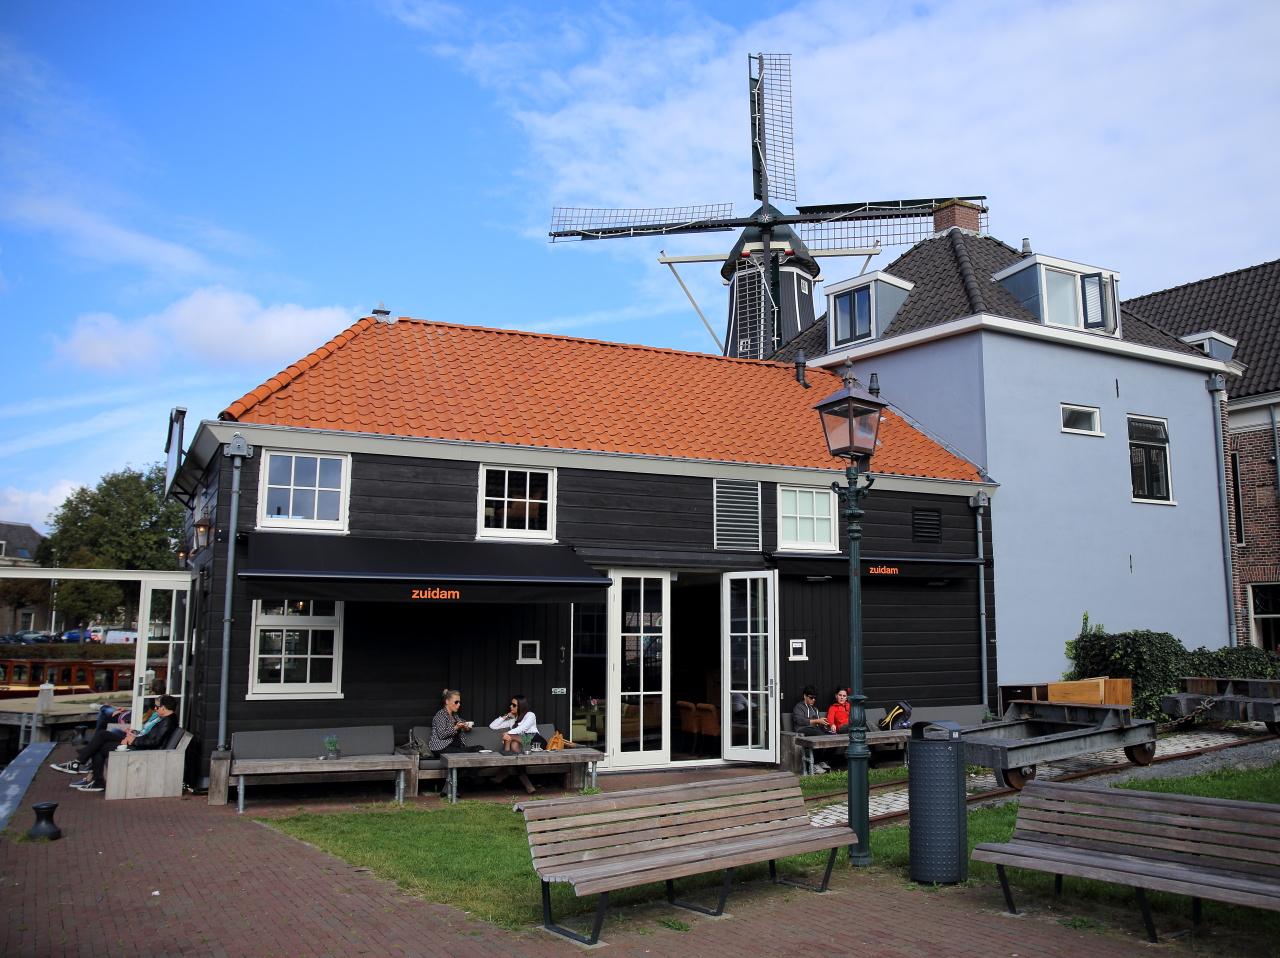 Photo Restaurant Zuidam in Haarlem, Eat & drink, Coffee, Lunch, Drink, Diner - #1